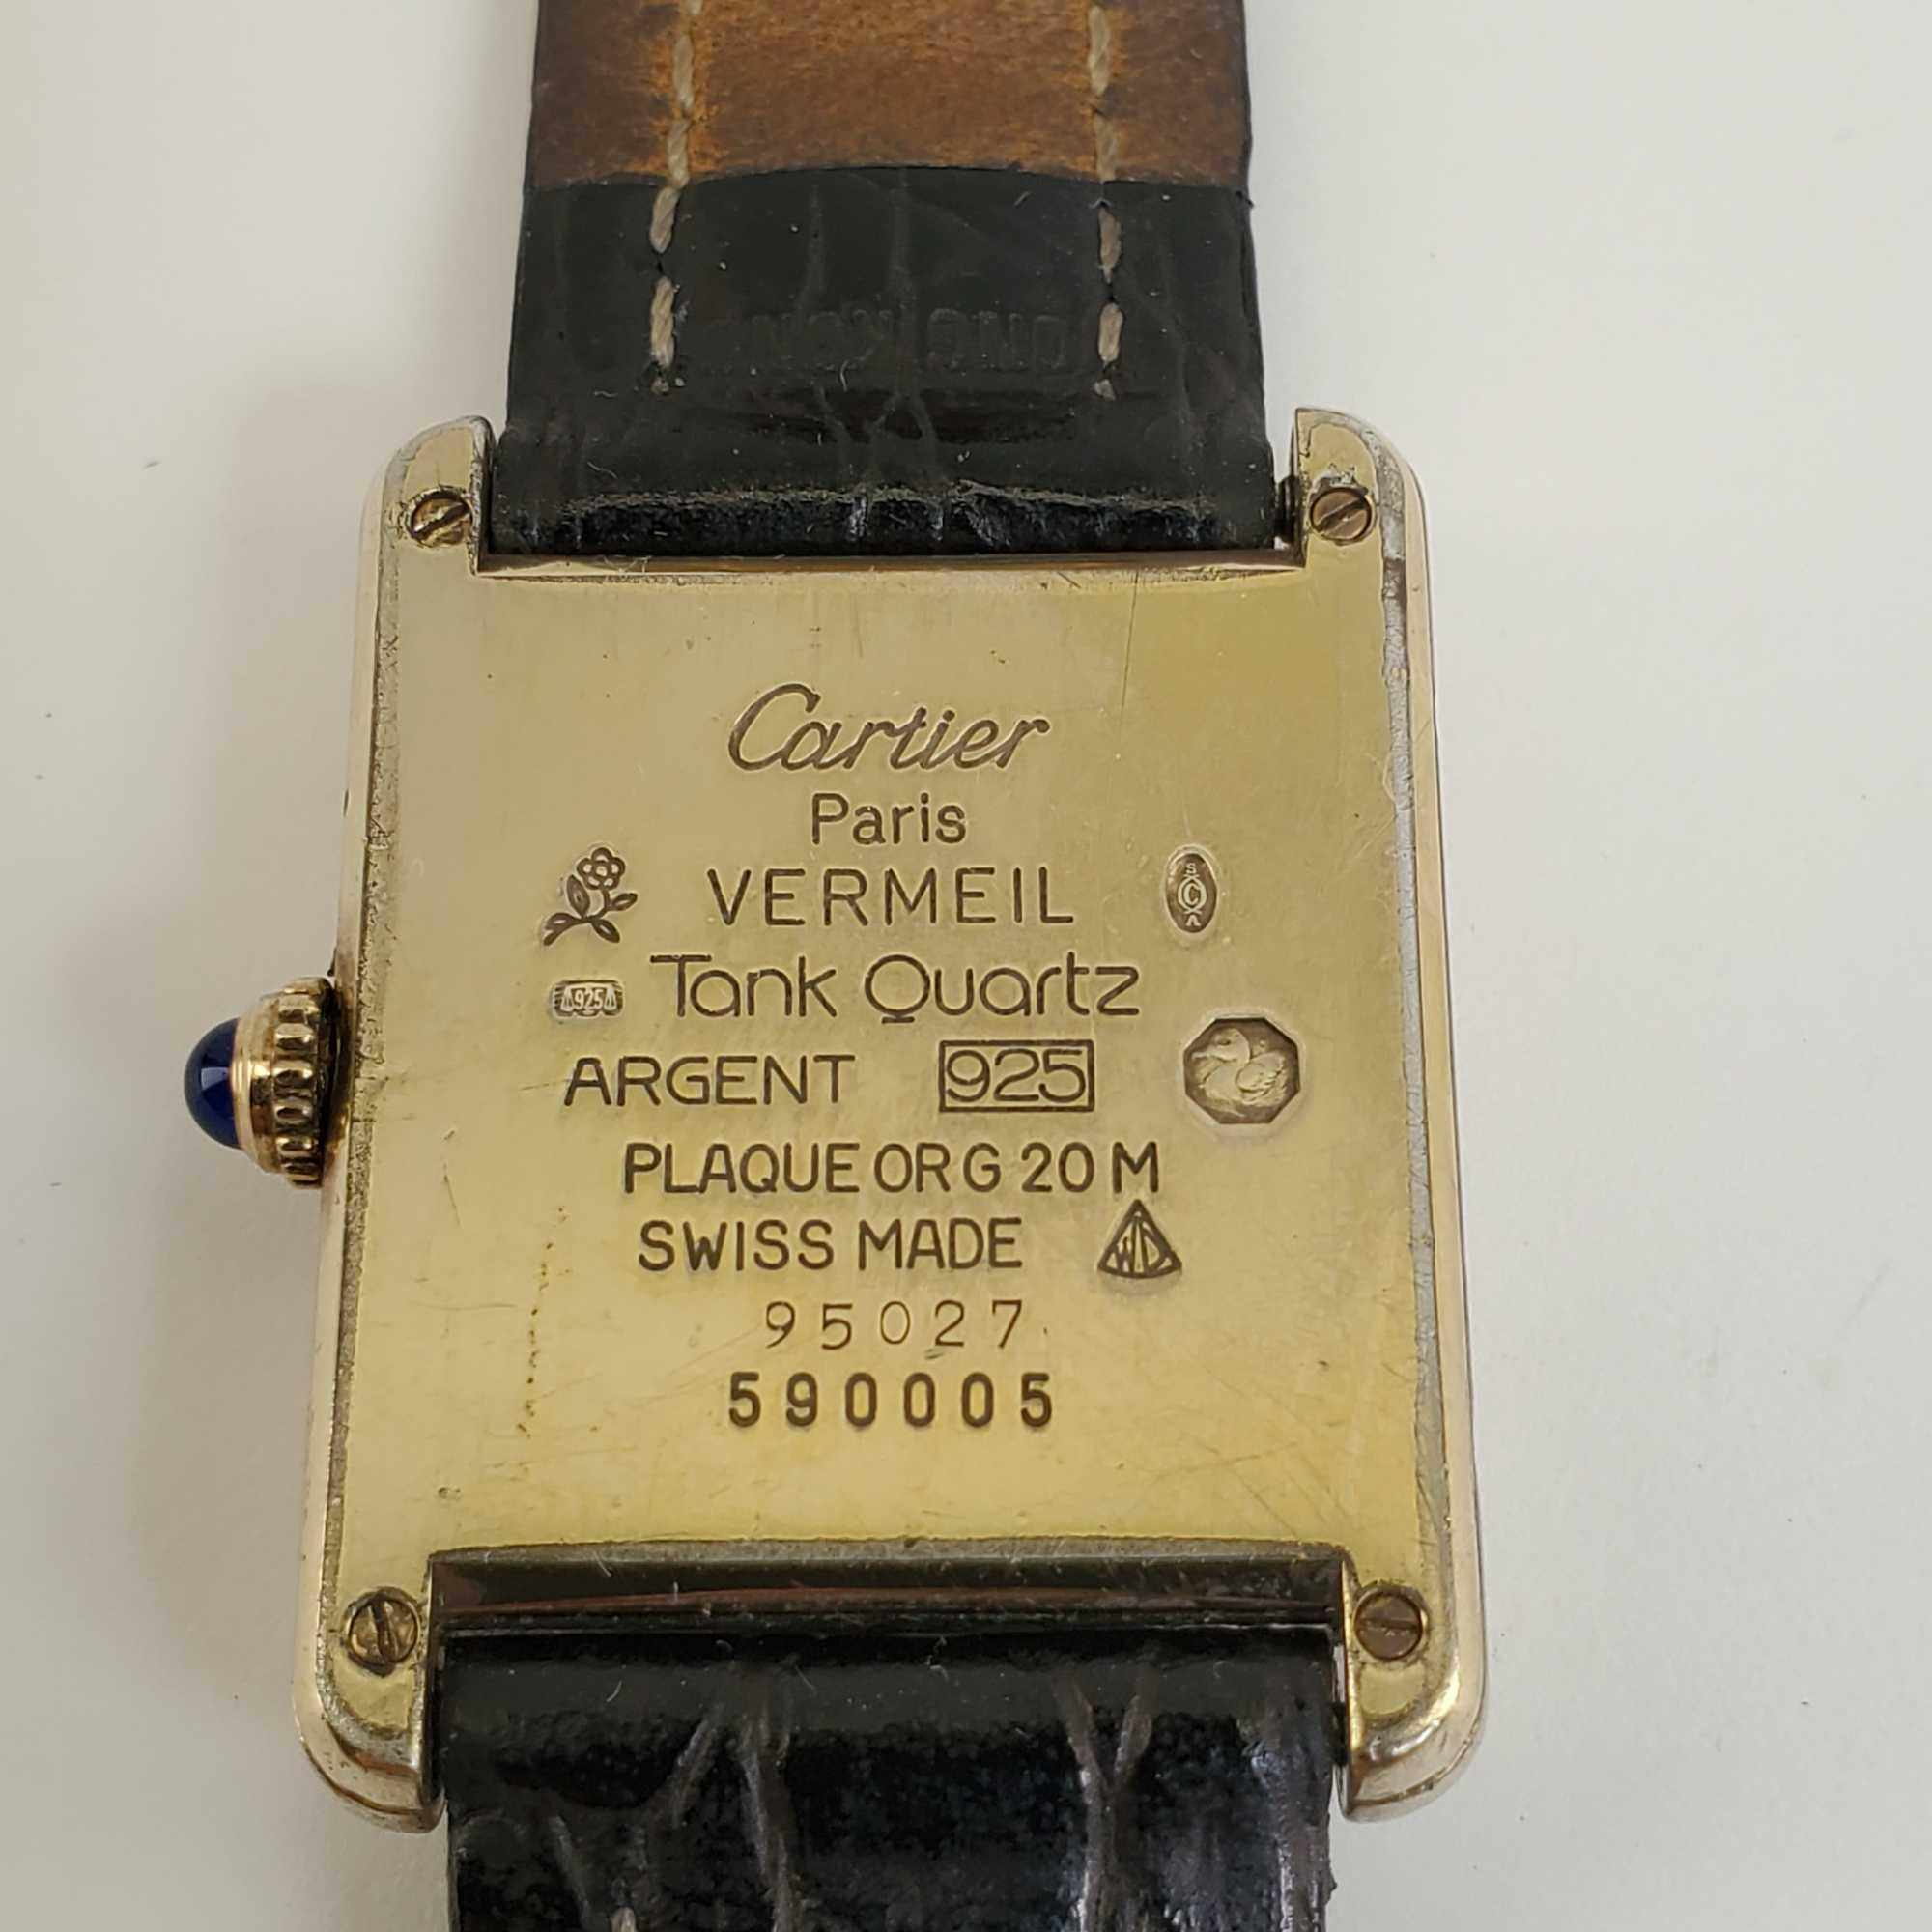 Cartier Paris Vermeil Tank Quartz Argent 925 | Proxibid